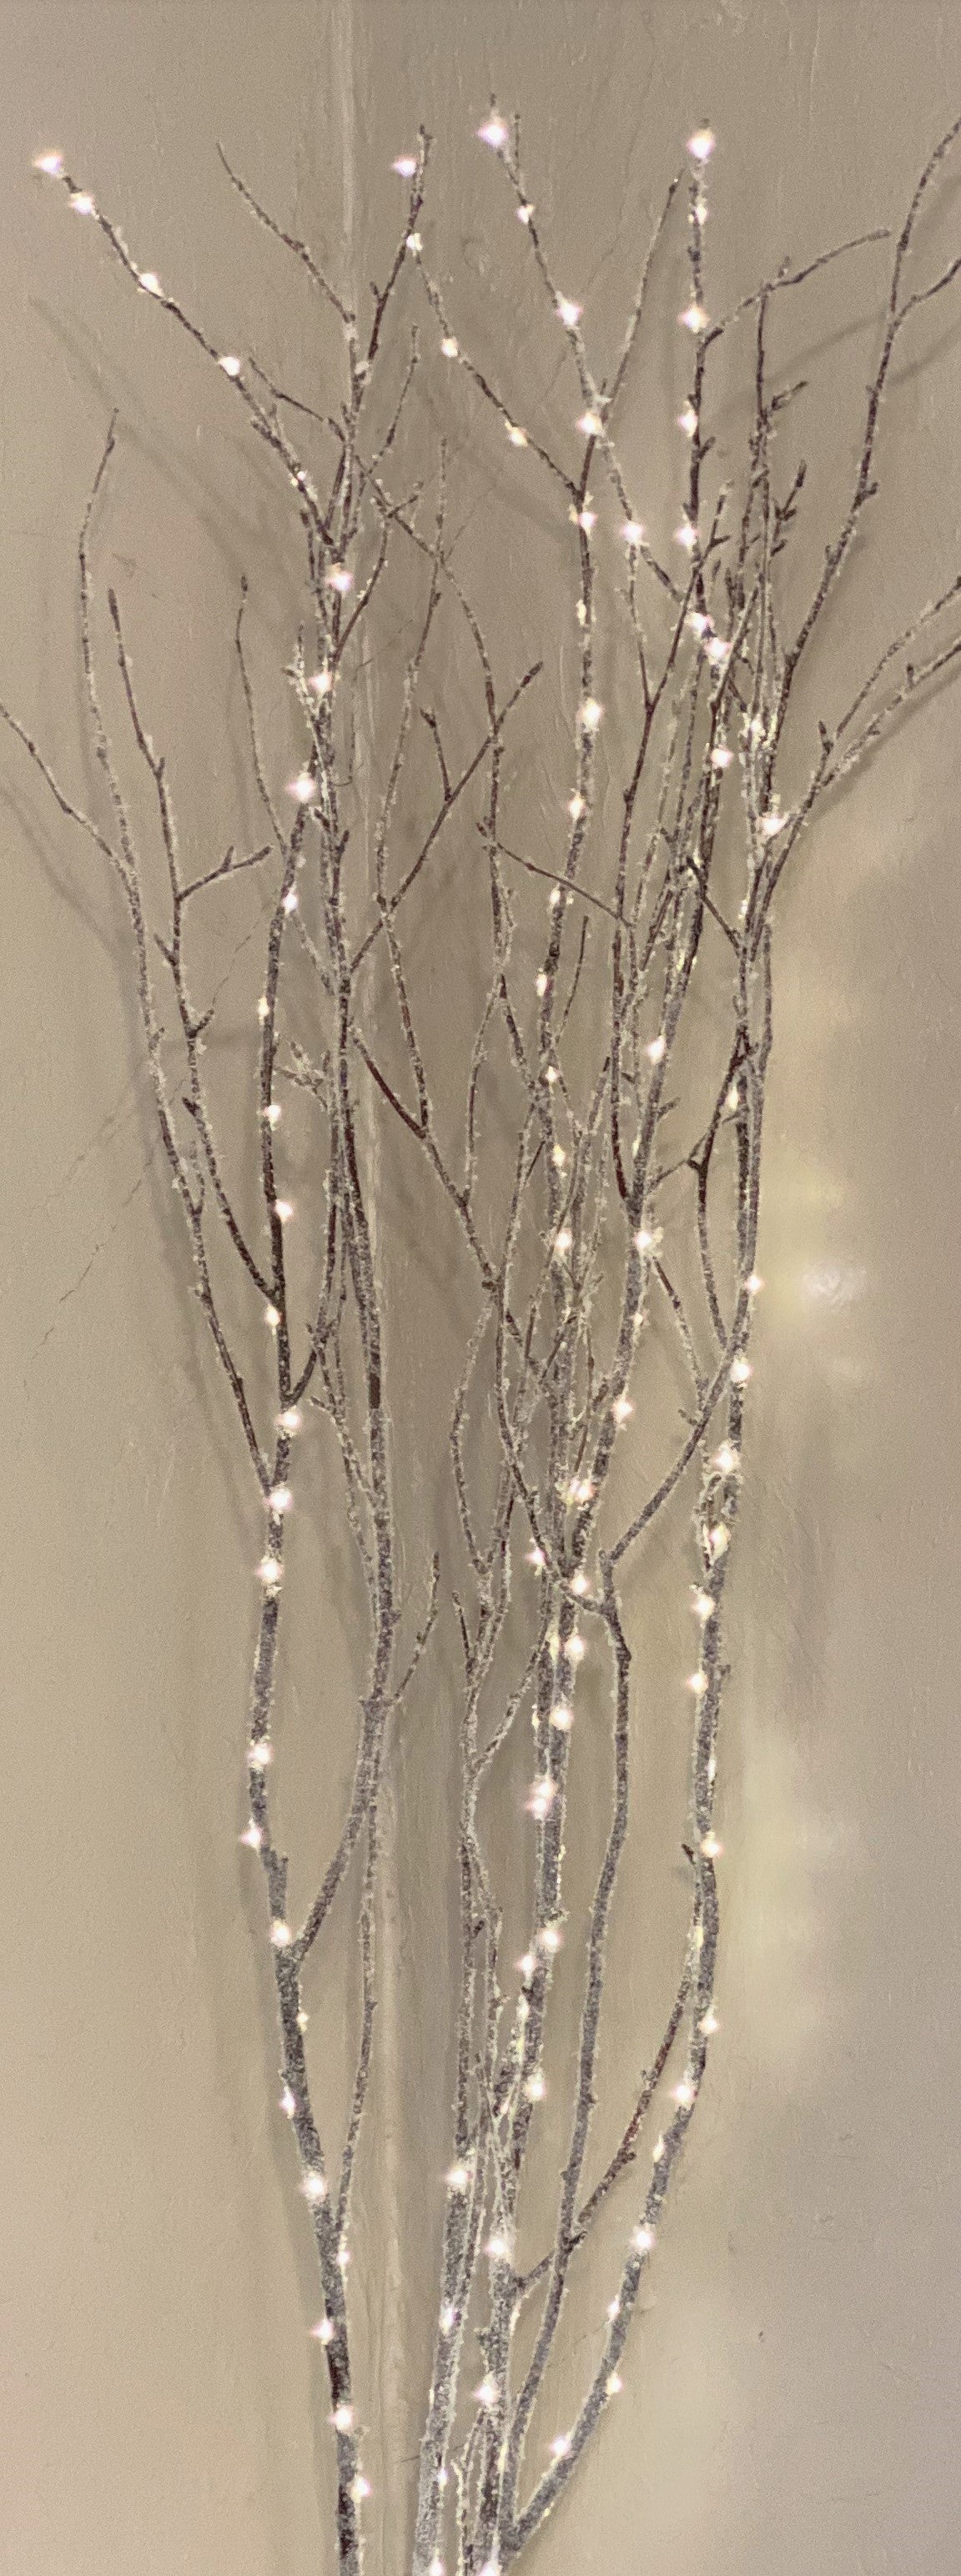 Birch Branches Snow Glitter